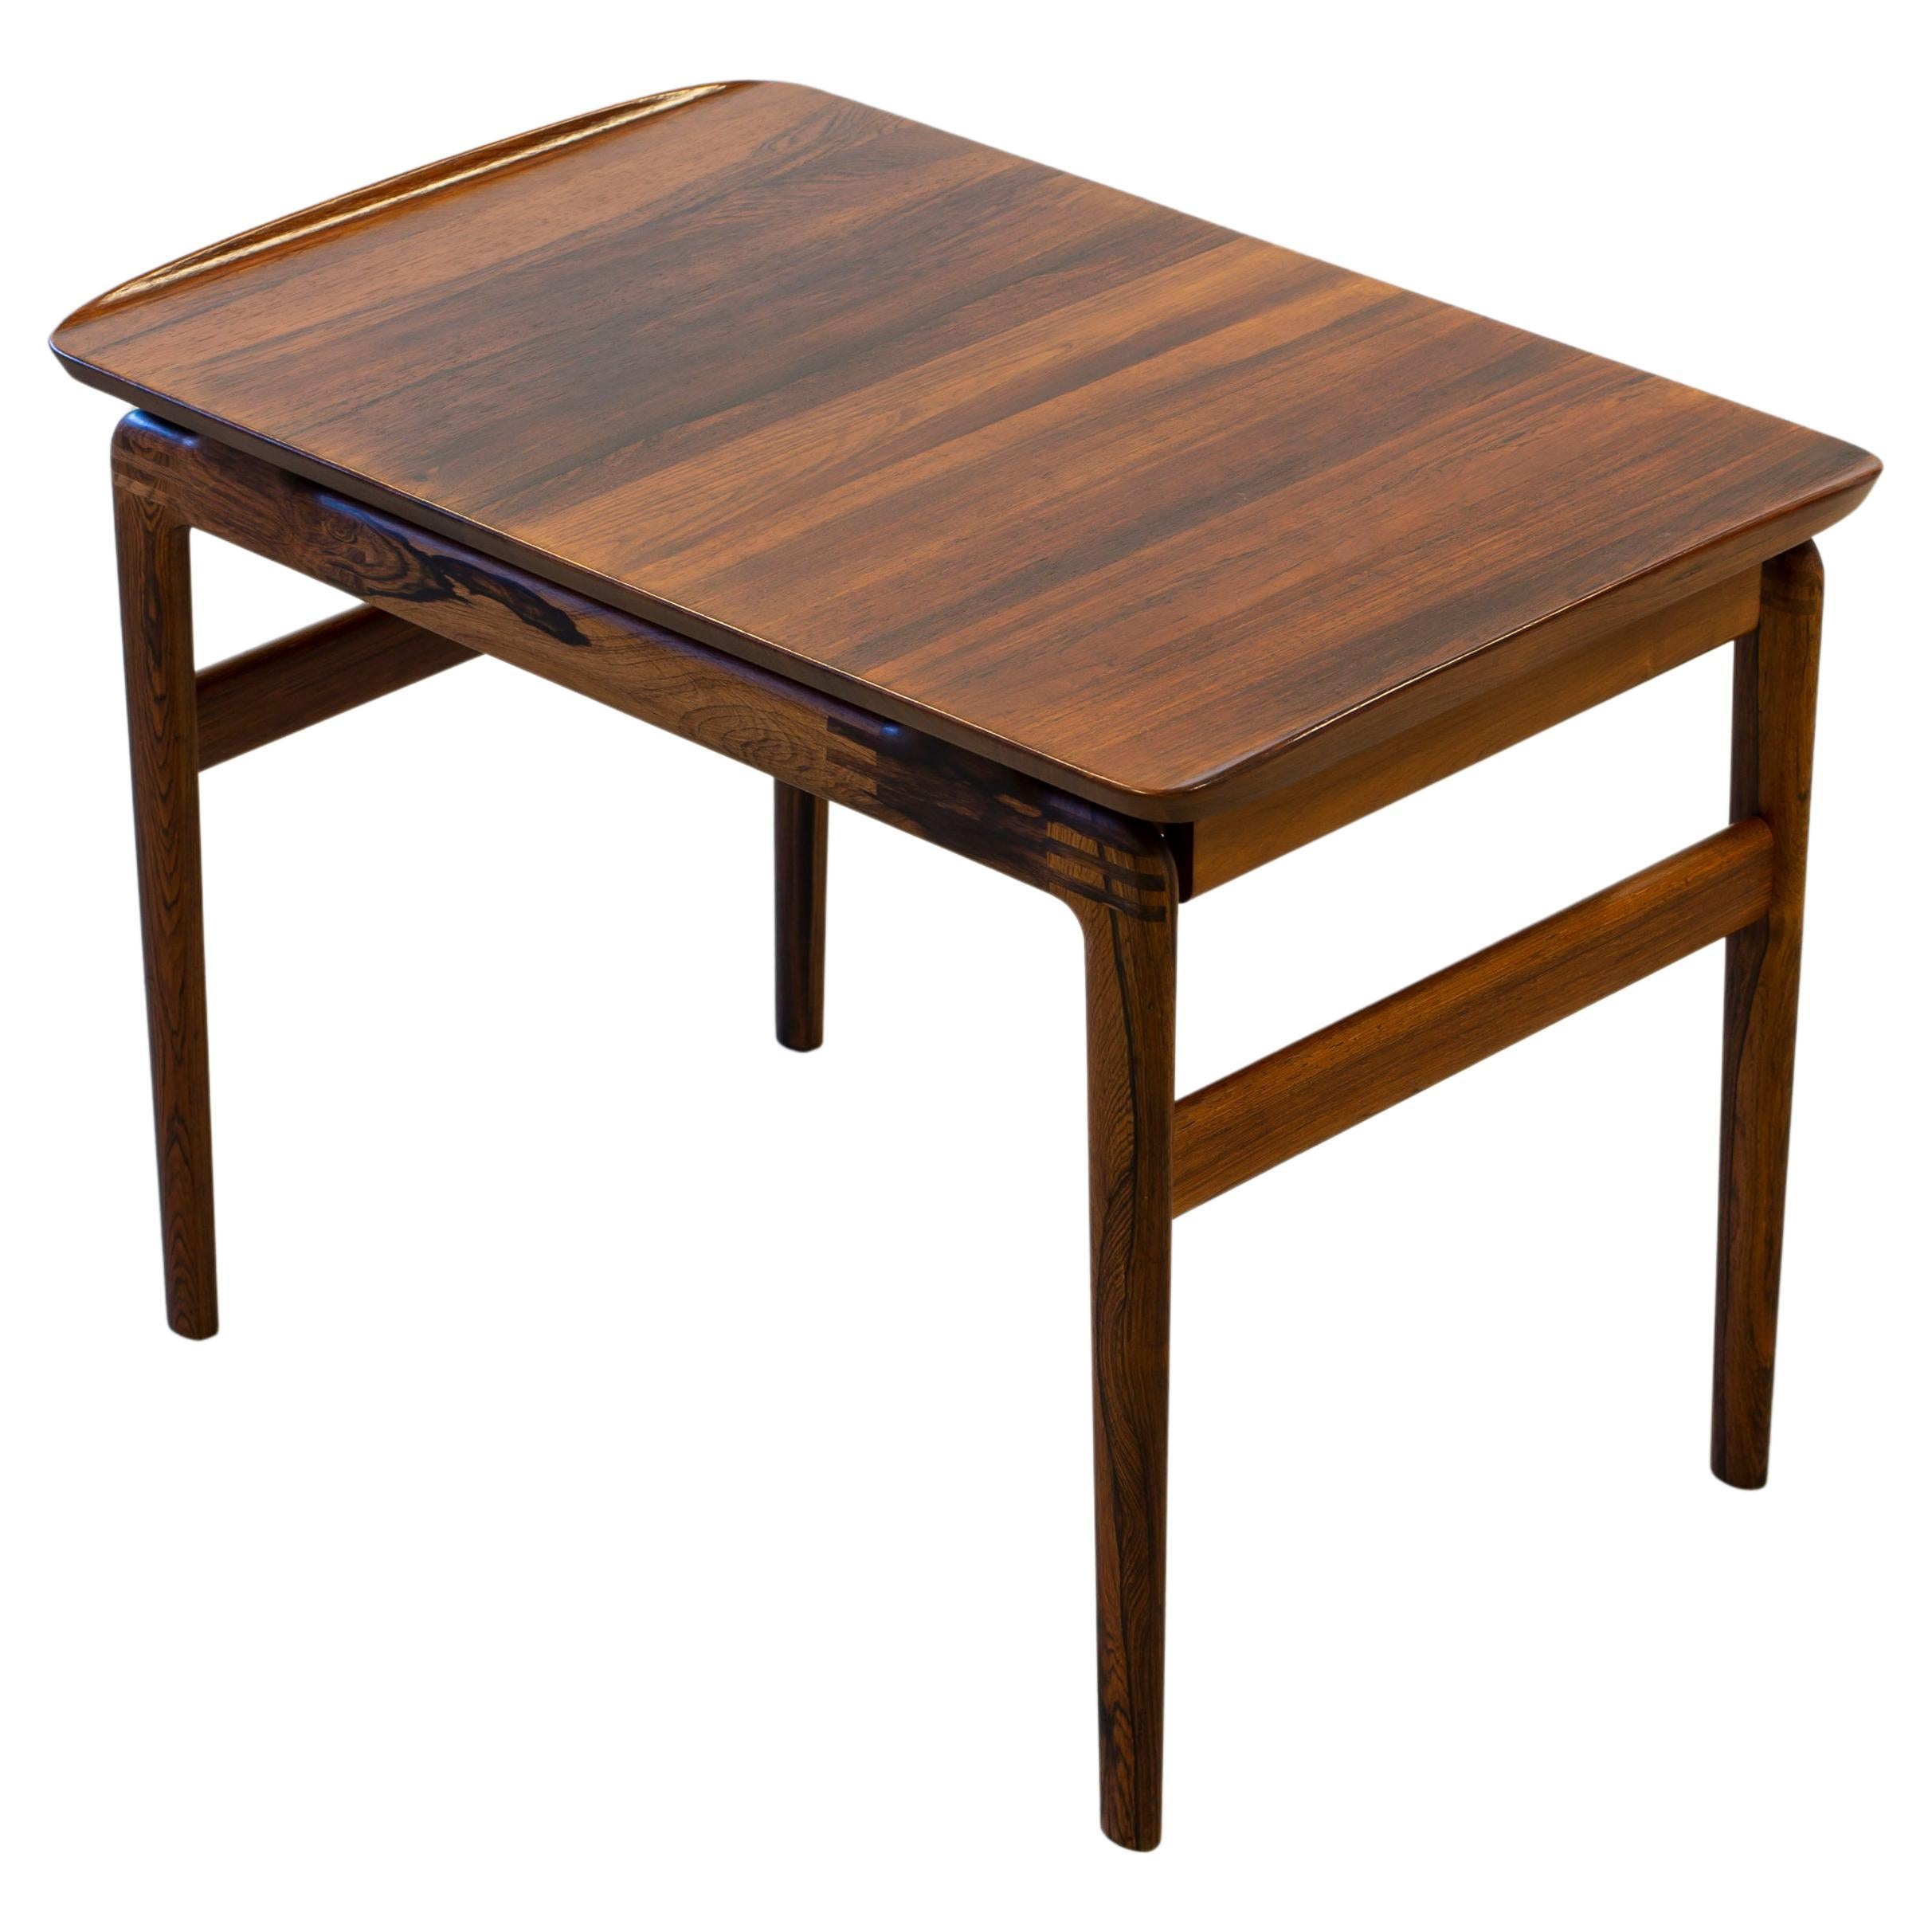 Rosewood side table by Hvidt & Mølgaard, denmark, 1960s, palisander